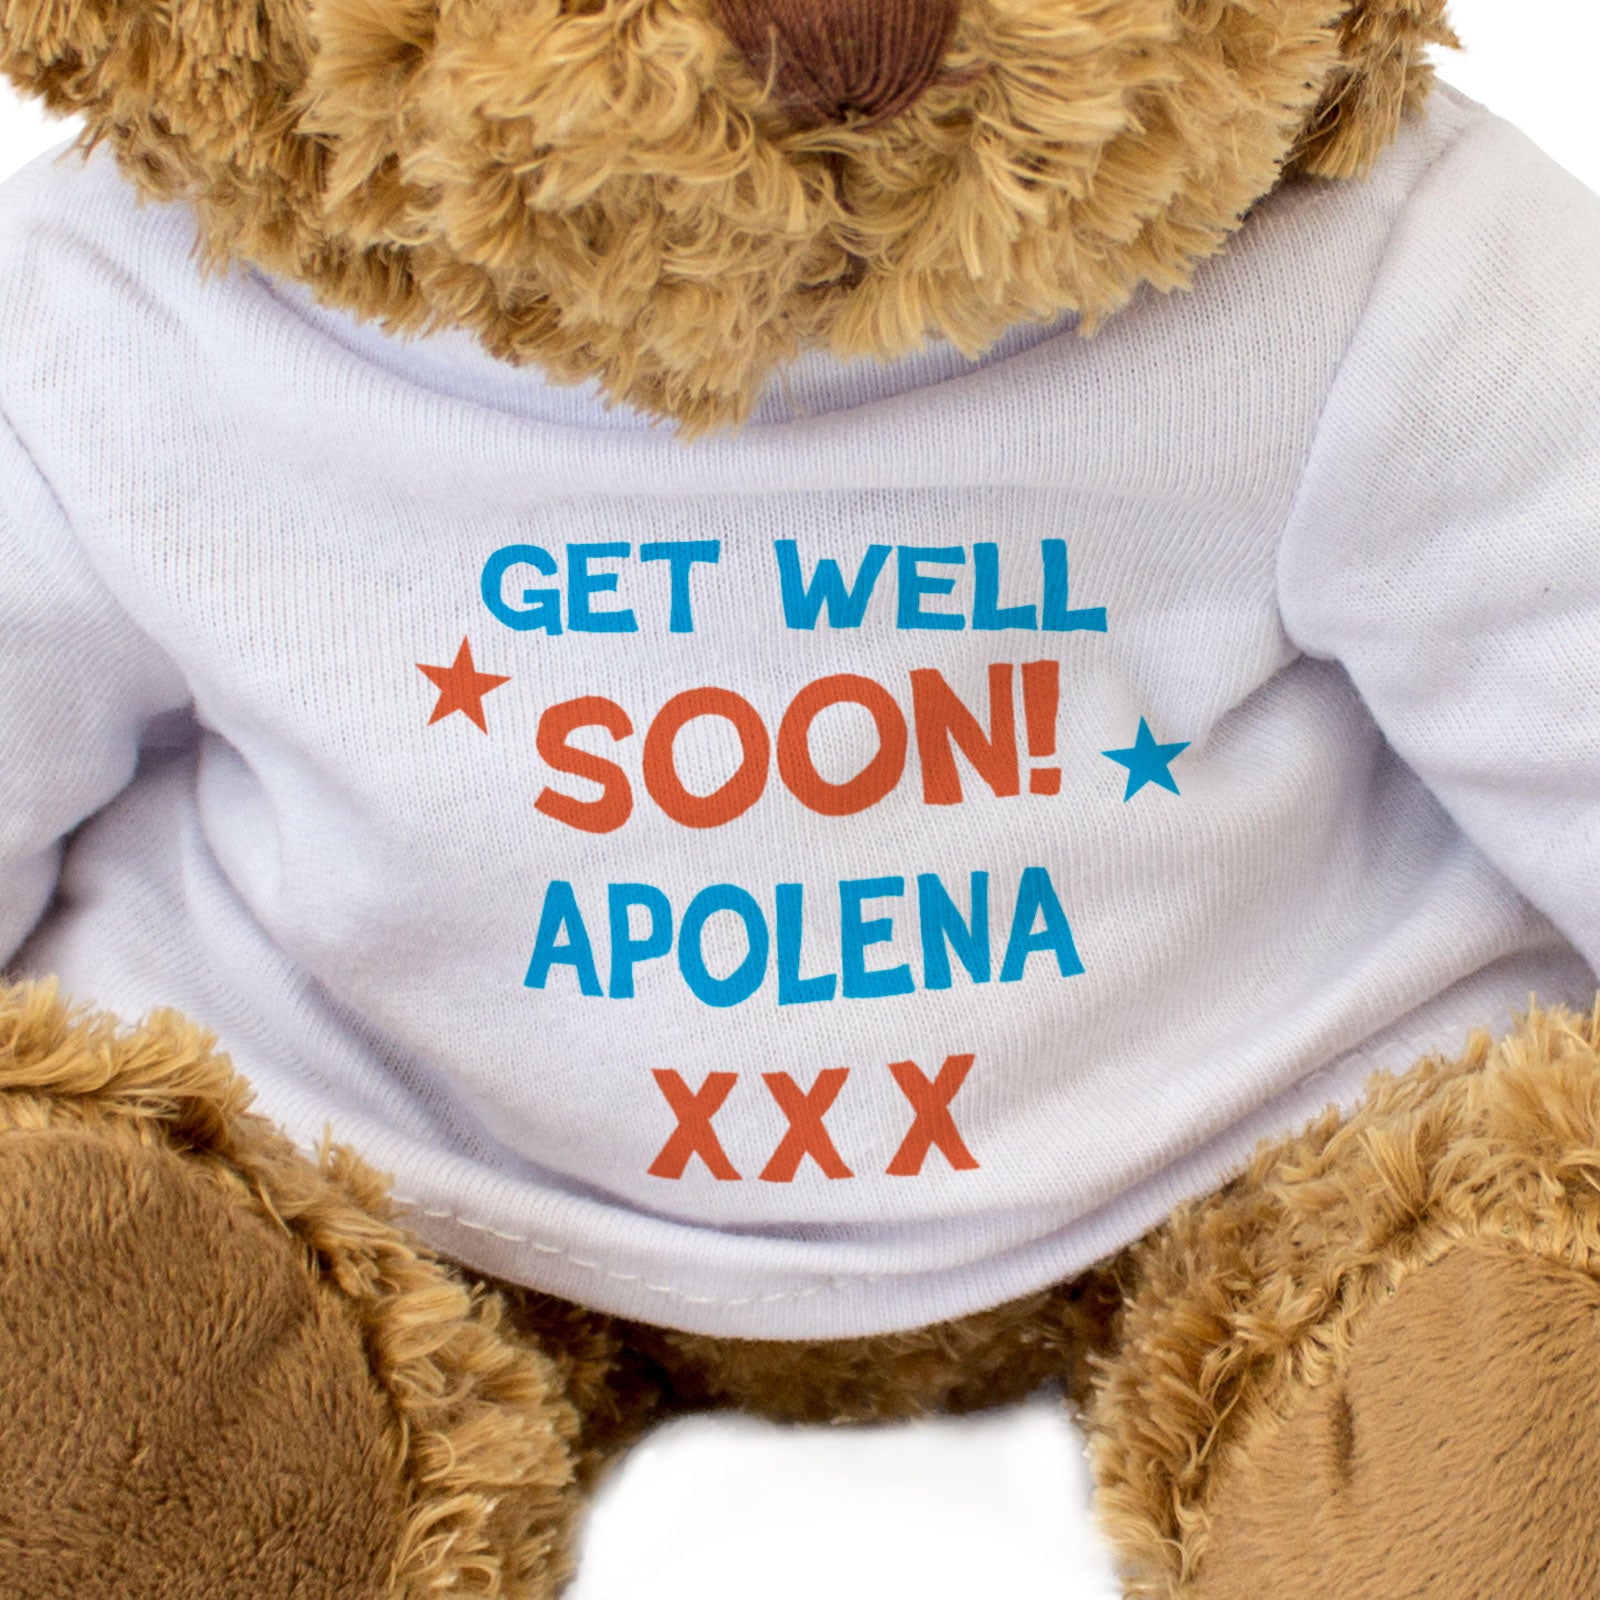 Get Well Soon Apolena - Teddy Bear